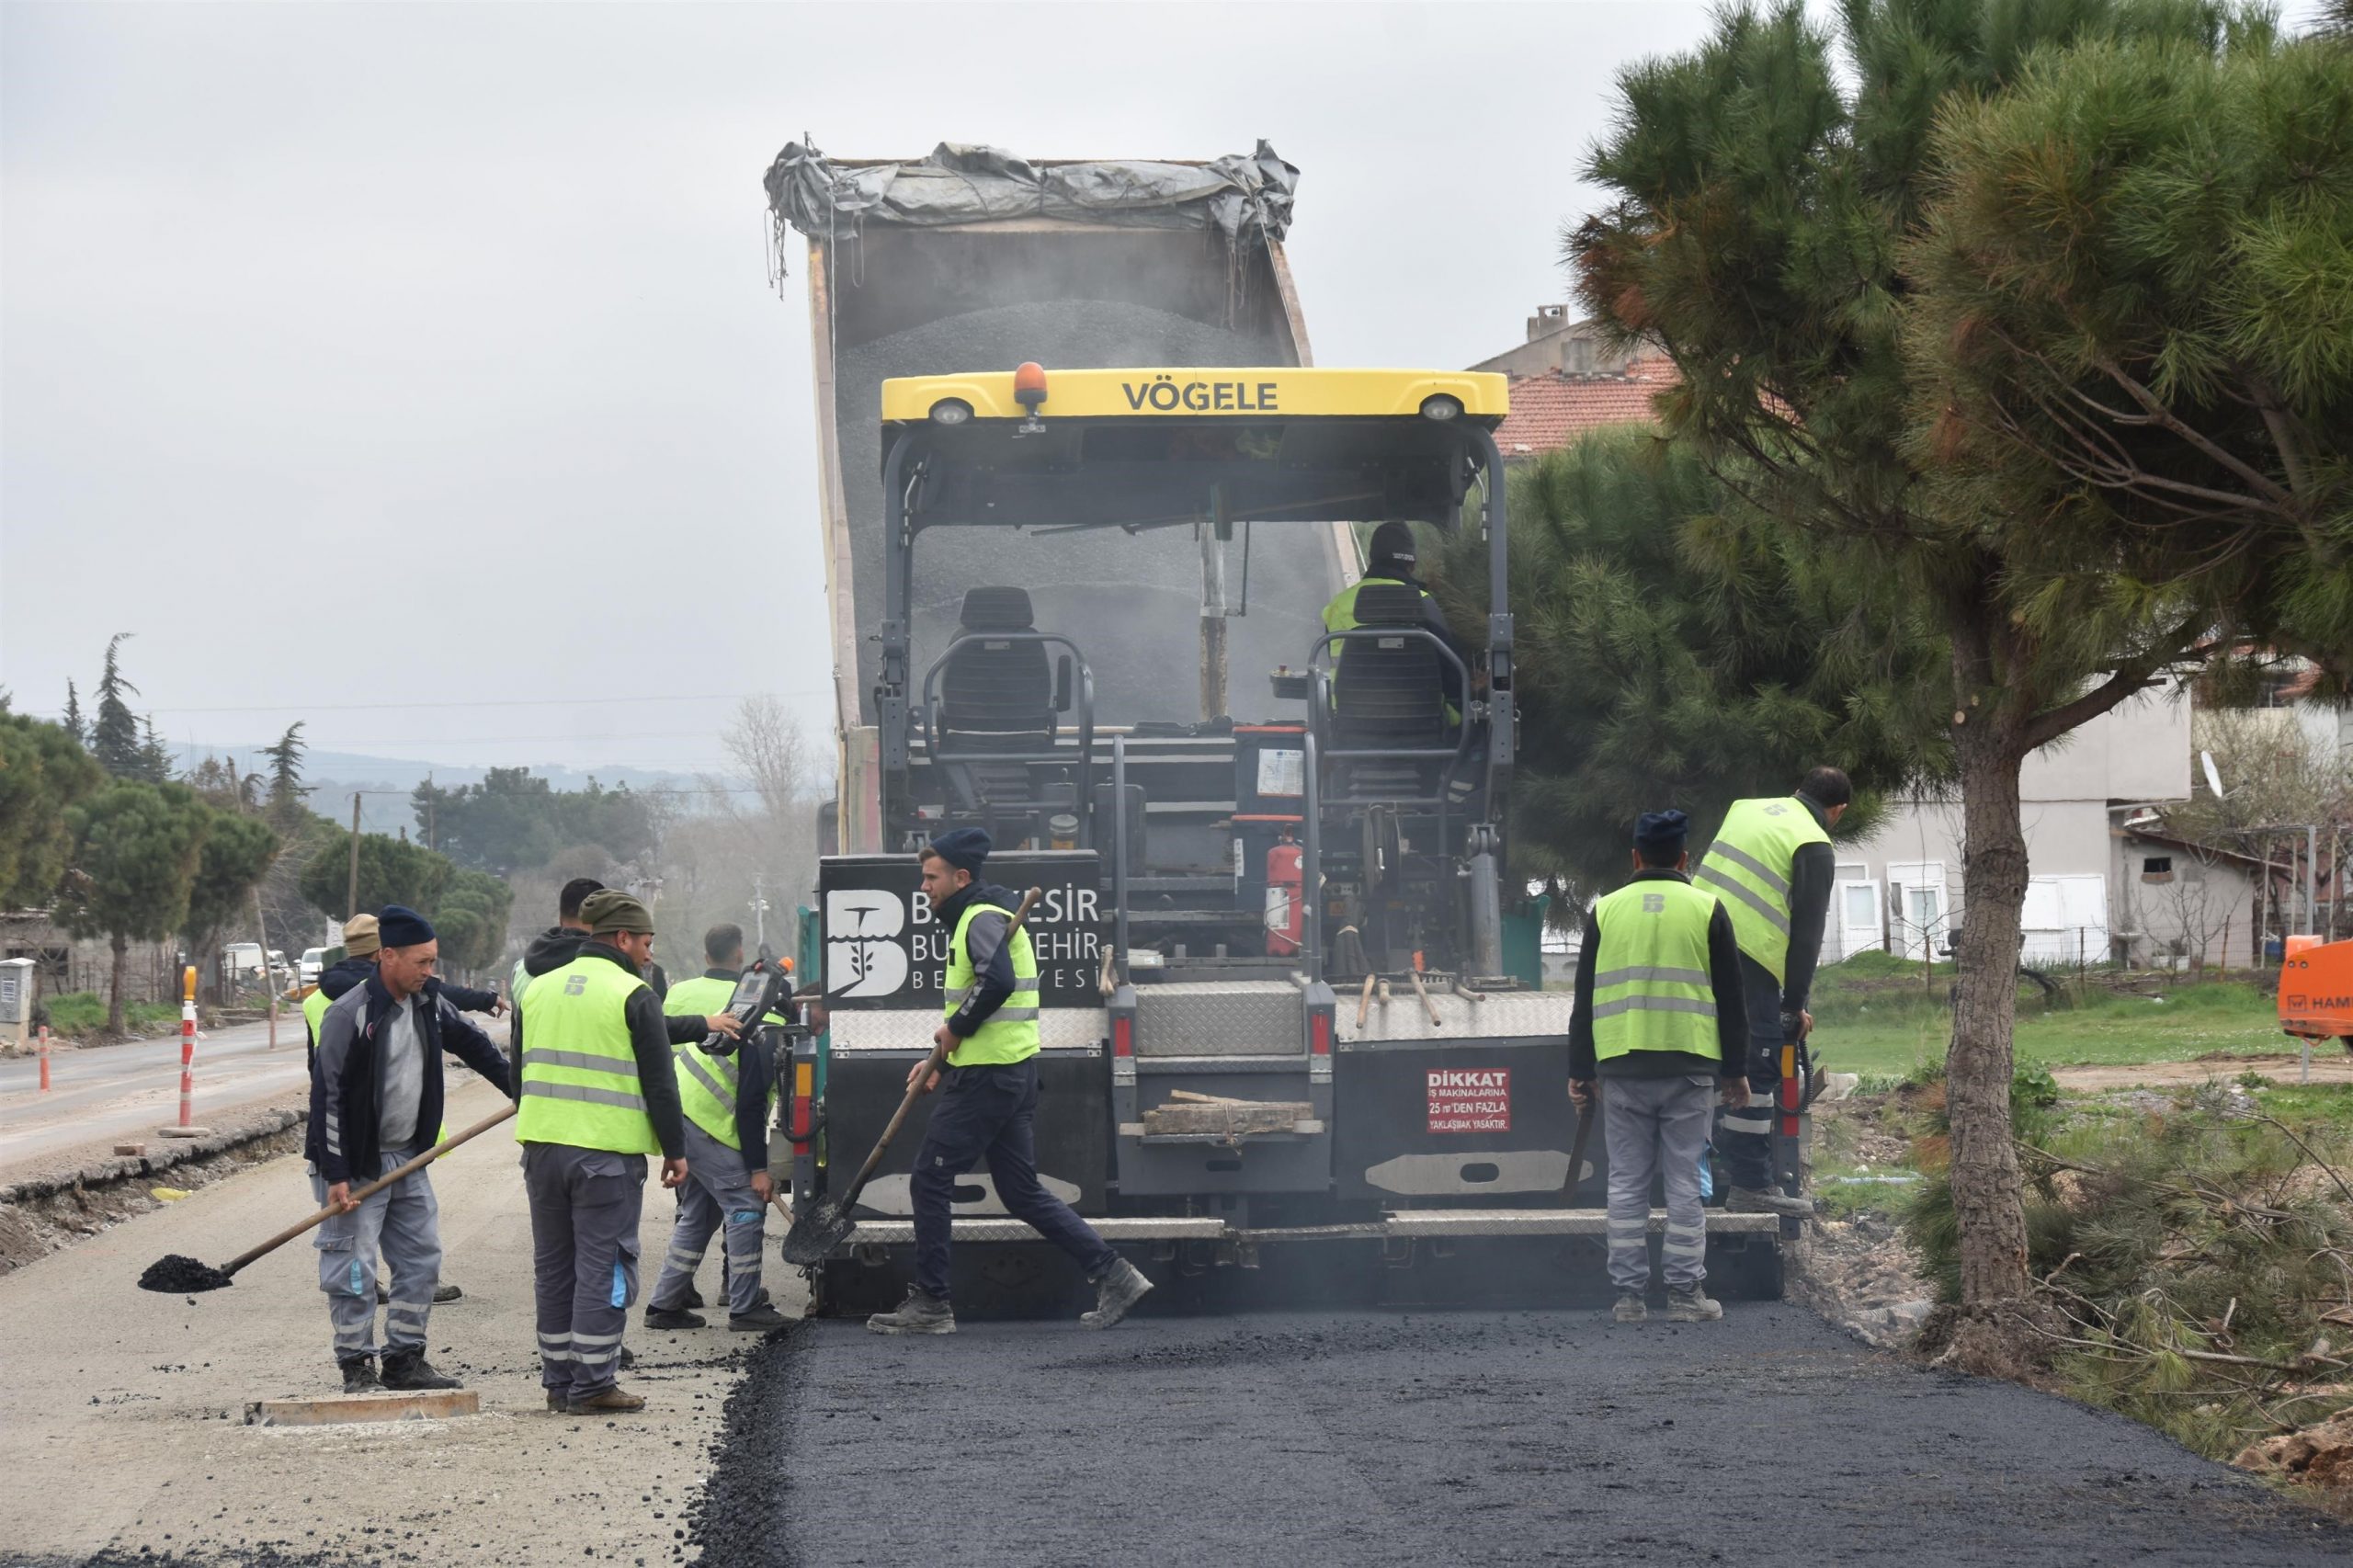 Balıkesir Büyükşehir’den Susurluk ve İvrindi’ye sıcak asfalt